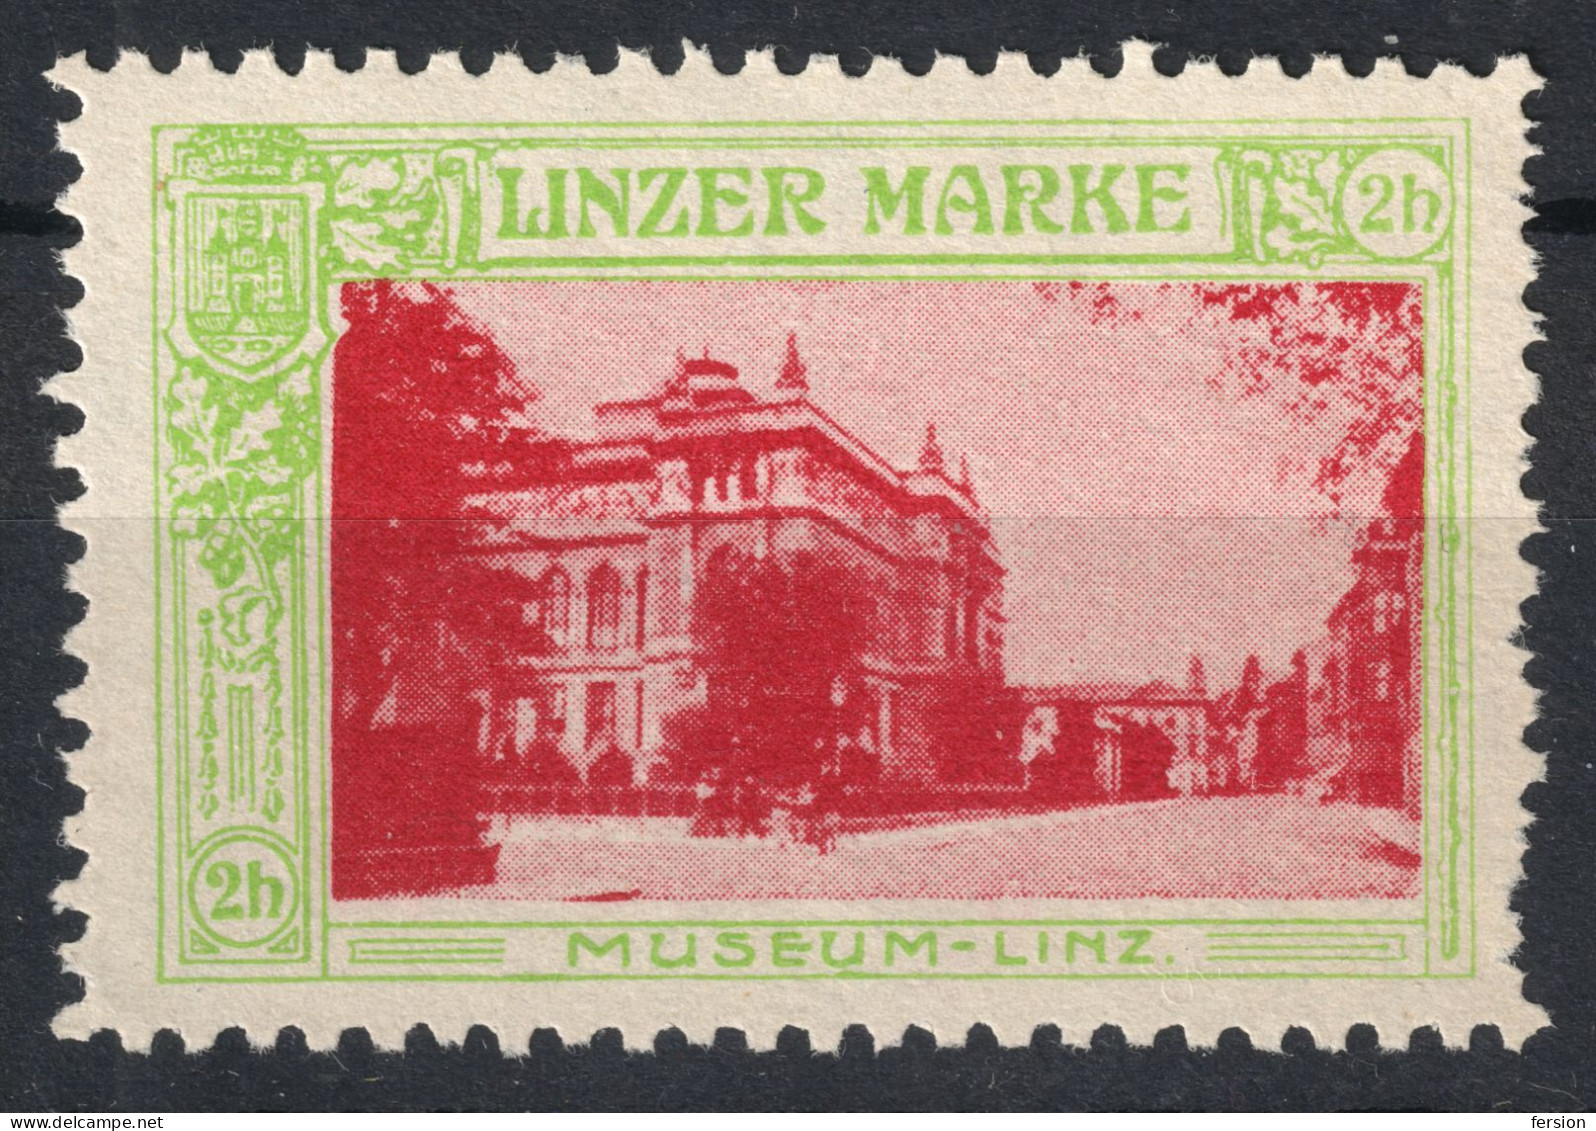 Museums MUSEUM - City LINZ 1910 Austria Charity Label Cinderella Vignette / LINZER MARKE - Musées